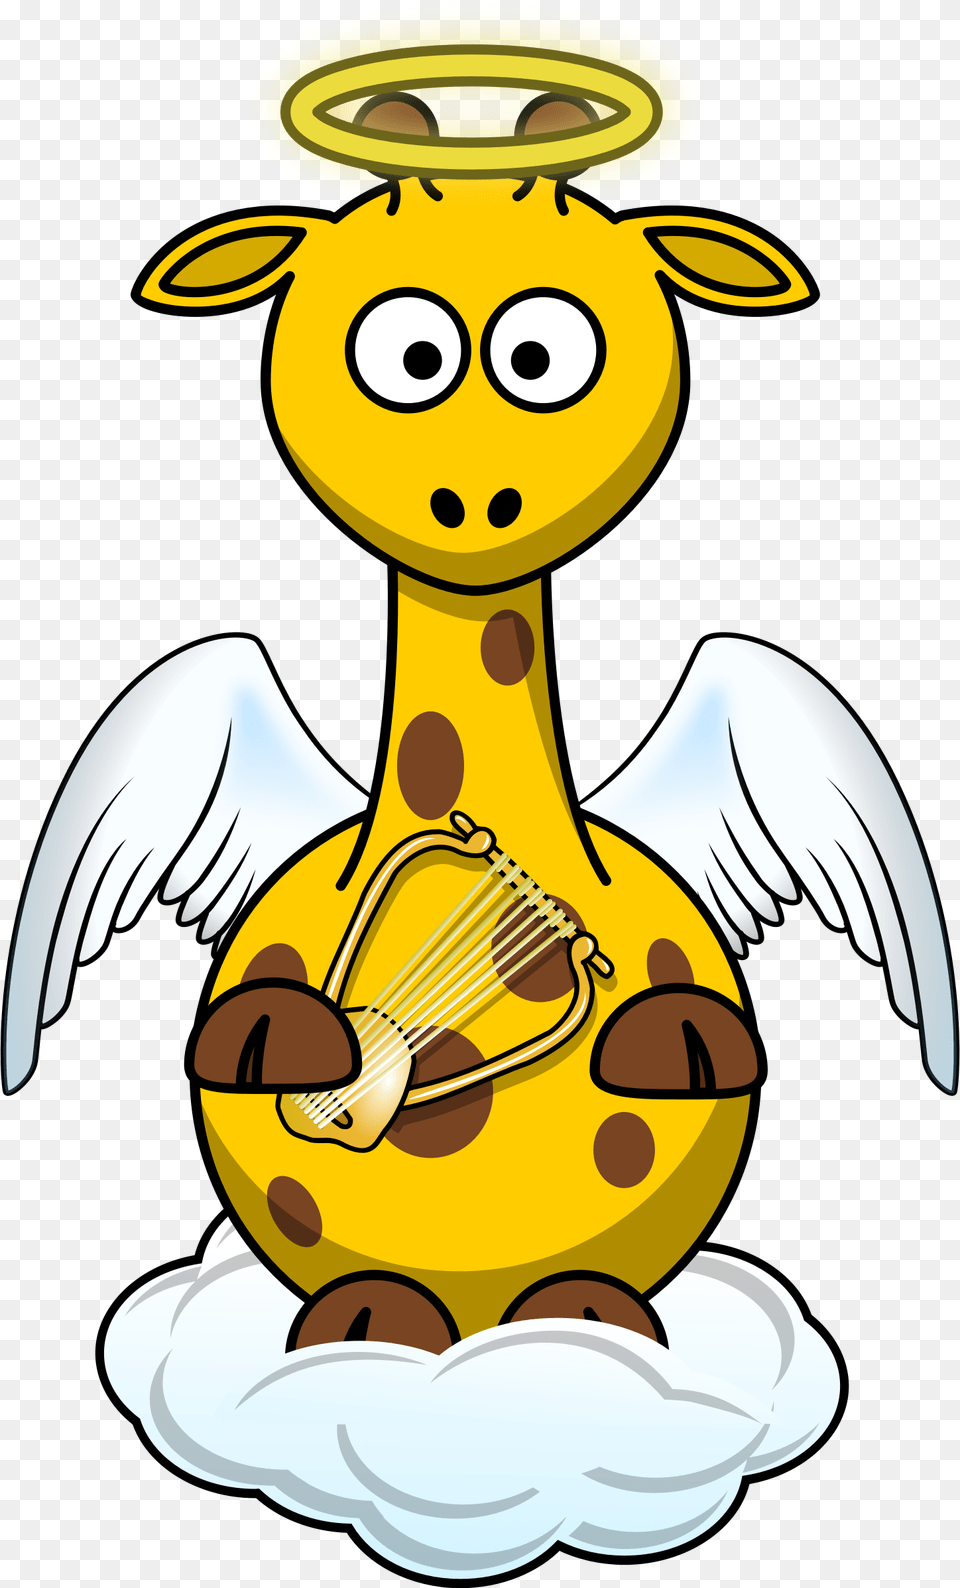 Giraffe Angel By Bingenberg A Giraffe Cartoon Dressed Cartoon Giraffe, Jar, Nature, Outdoors, Snow Free Png Download